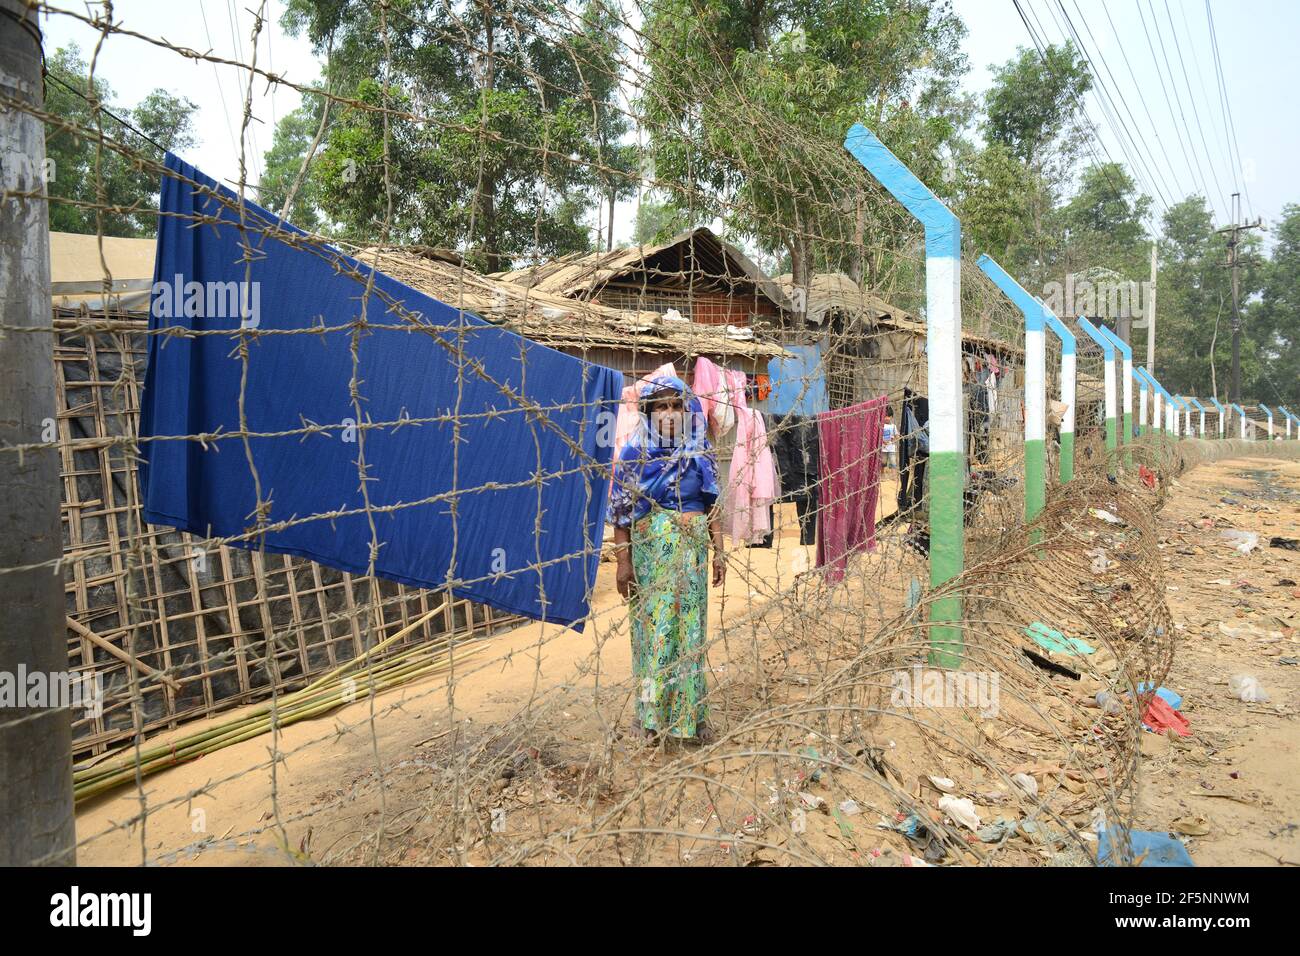 Le Bangladesh défend l'utilisation des clôtures après le feu mortel du camp de Rohingya au camp de réfugiés d'Ukhia rohingya, à Cox'x Bazar, au Bangladesh. Humanitaria internationale Banque D'Images